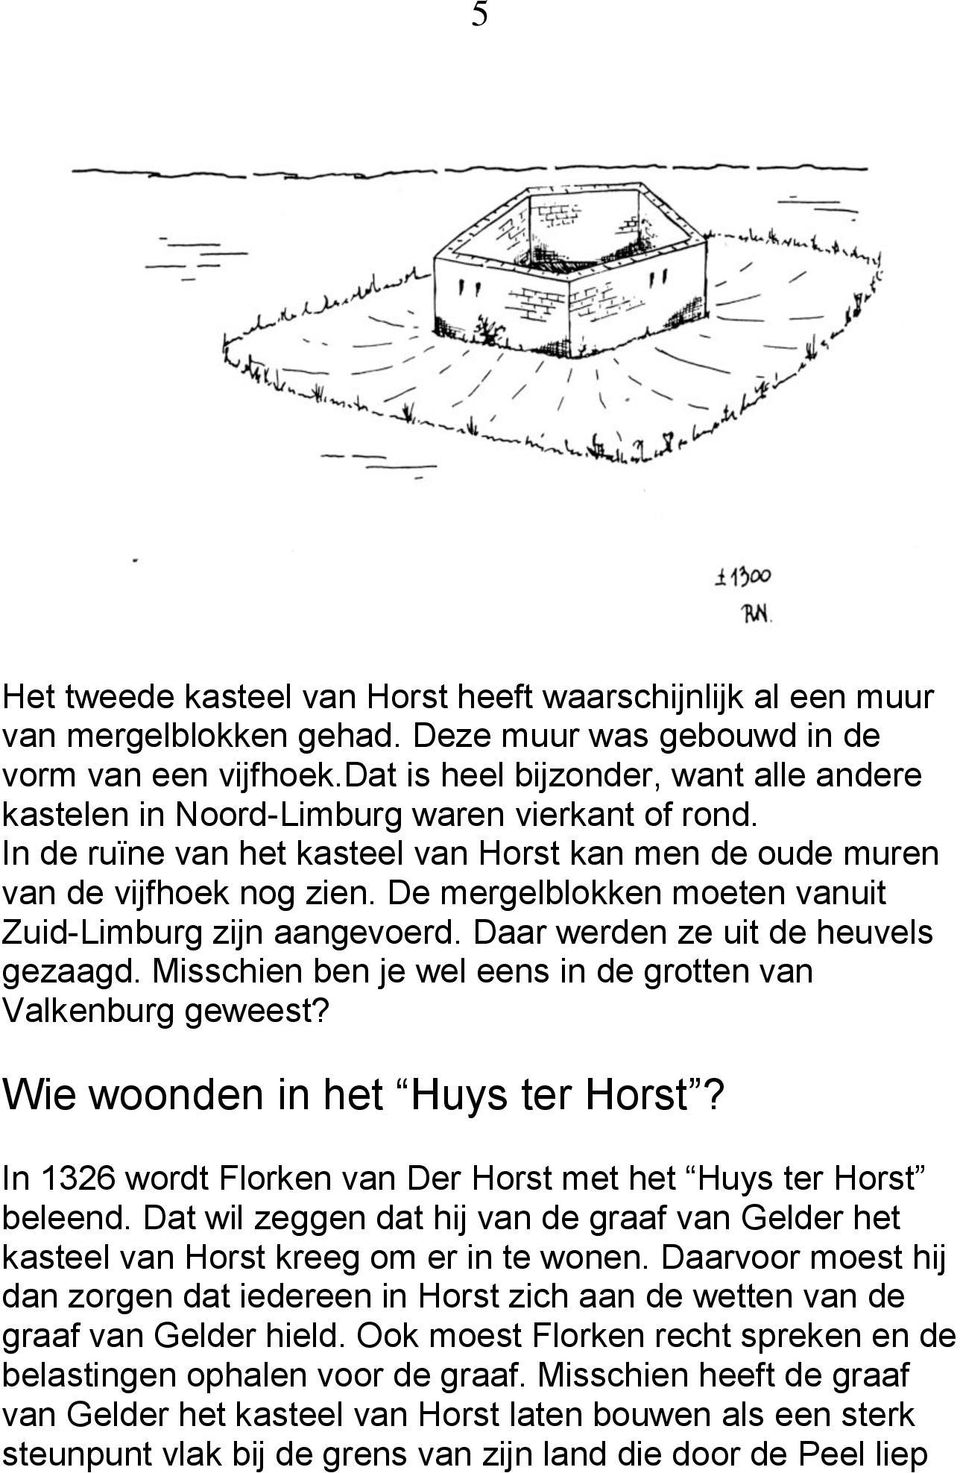 De mergelblokken moeten vanuit Zuid-Limburg zijn aangevoerd. Daar werden ze uit de heuvels gezaagd. Misschien ben je wel eens in de grotten van Valkenburg geweest? Wie woonden in het Huys ter Horst?